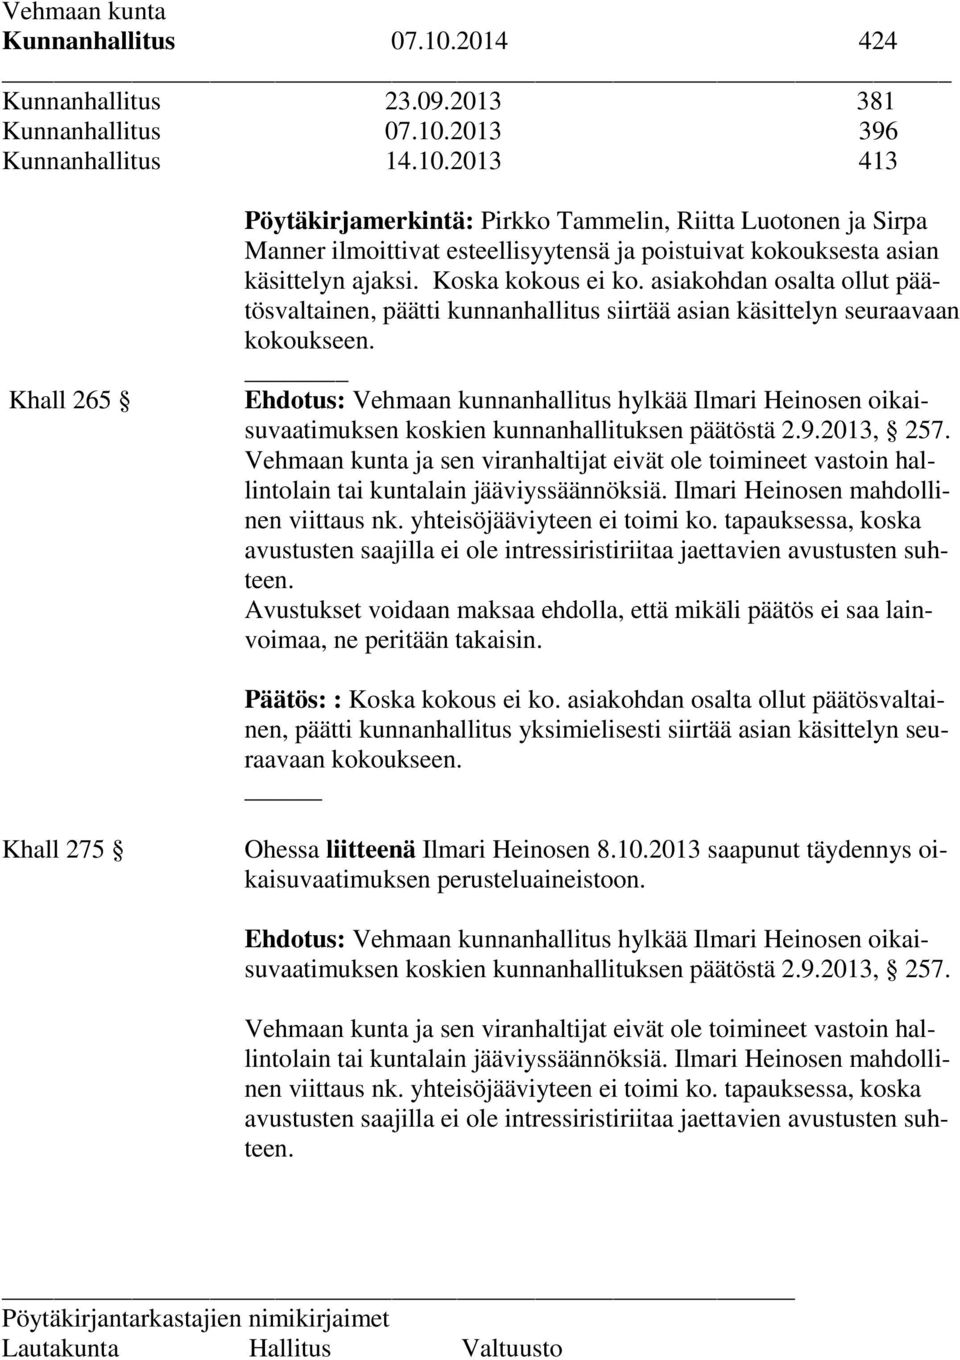 Ehdotus: Vehmaan kunnanhallitus hylkää Ilmari Heinosen oikaisuvaatimuksen koskien kunnanhallituksen päätöstä 2.9.2013, 257.